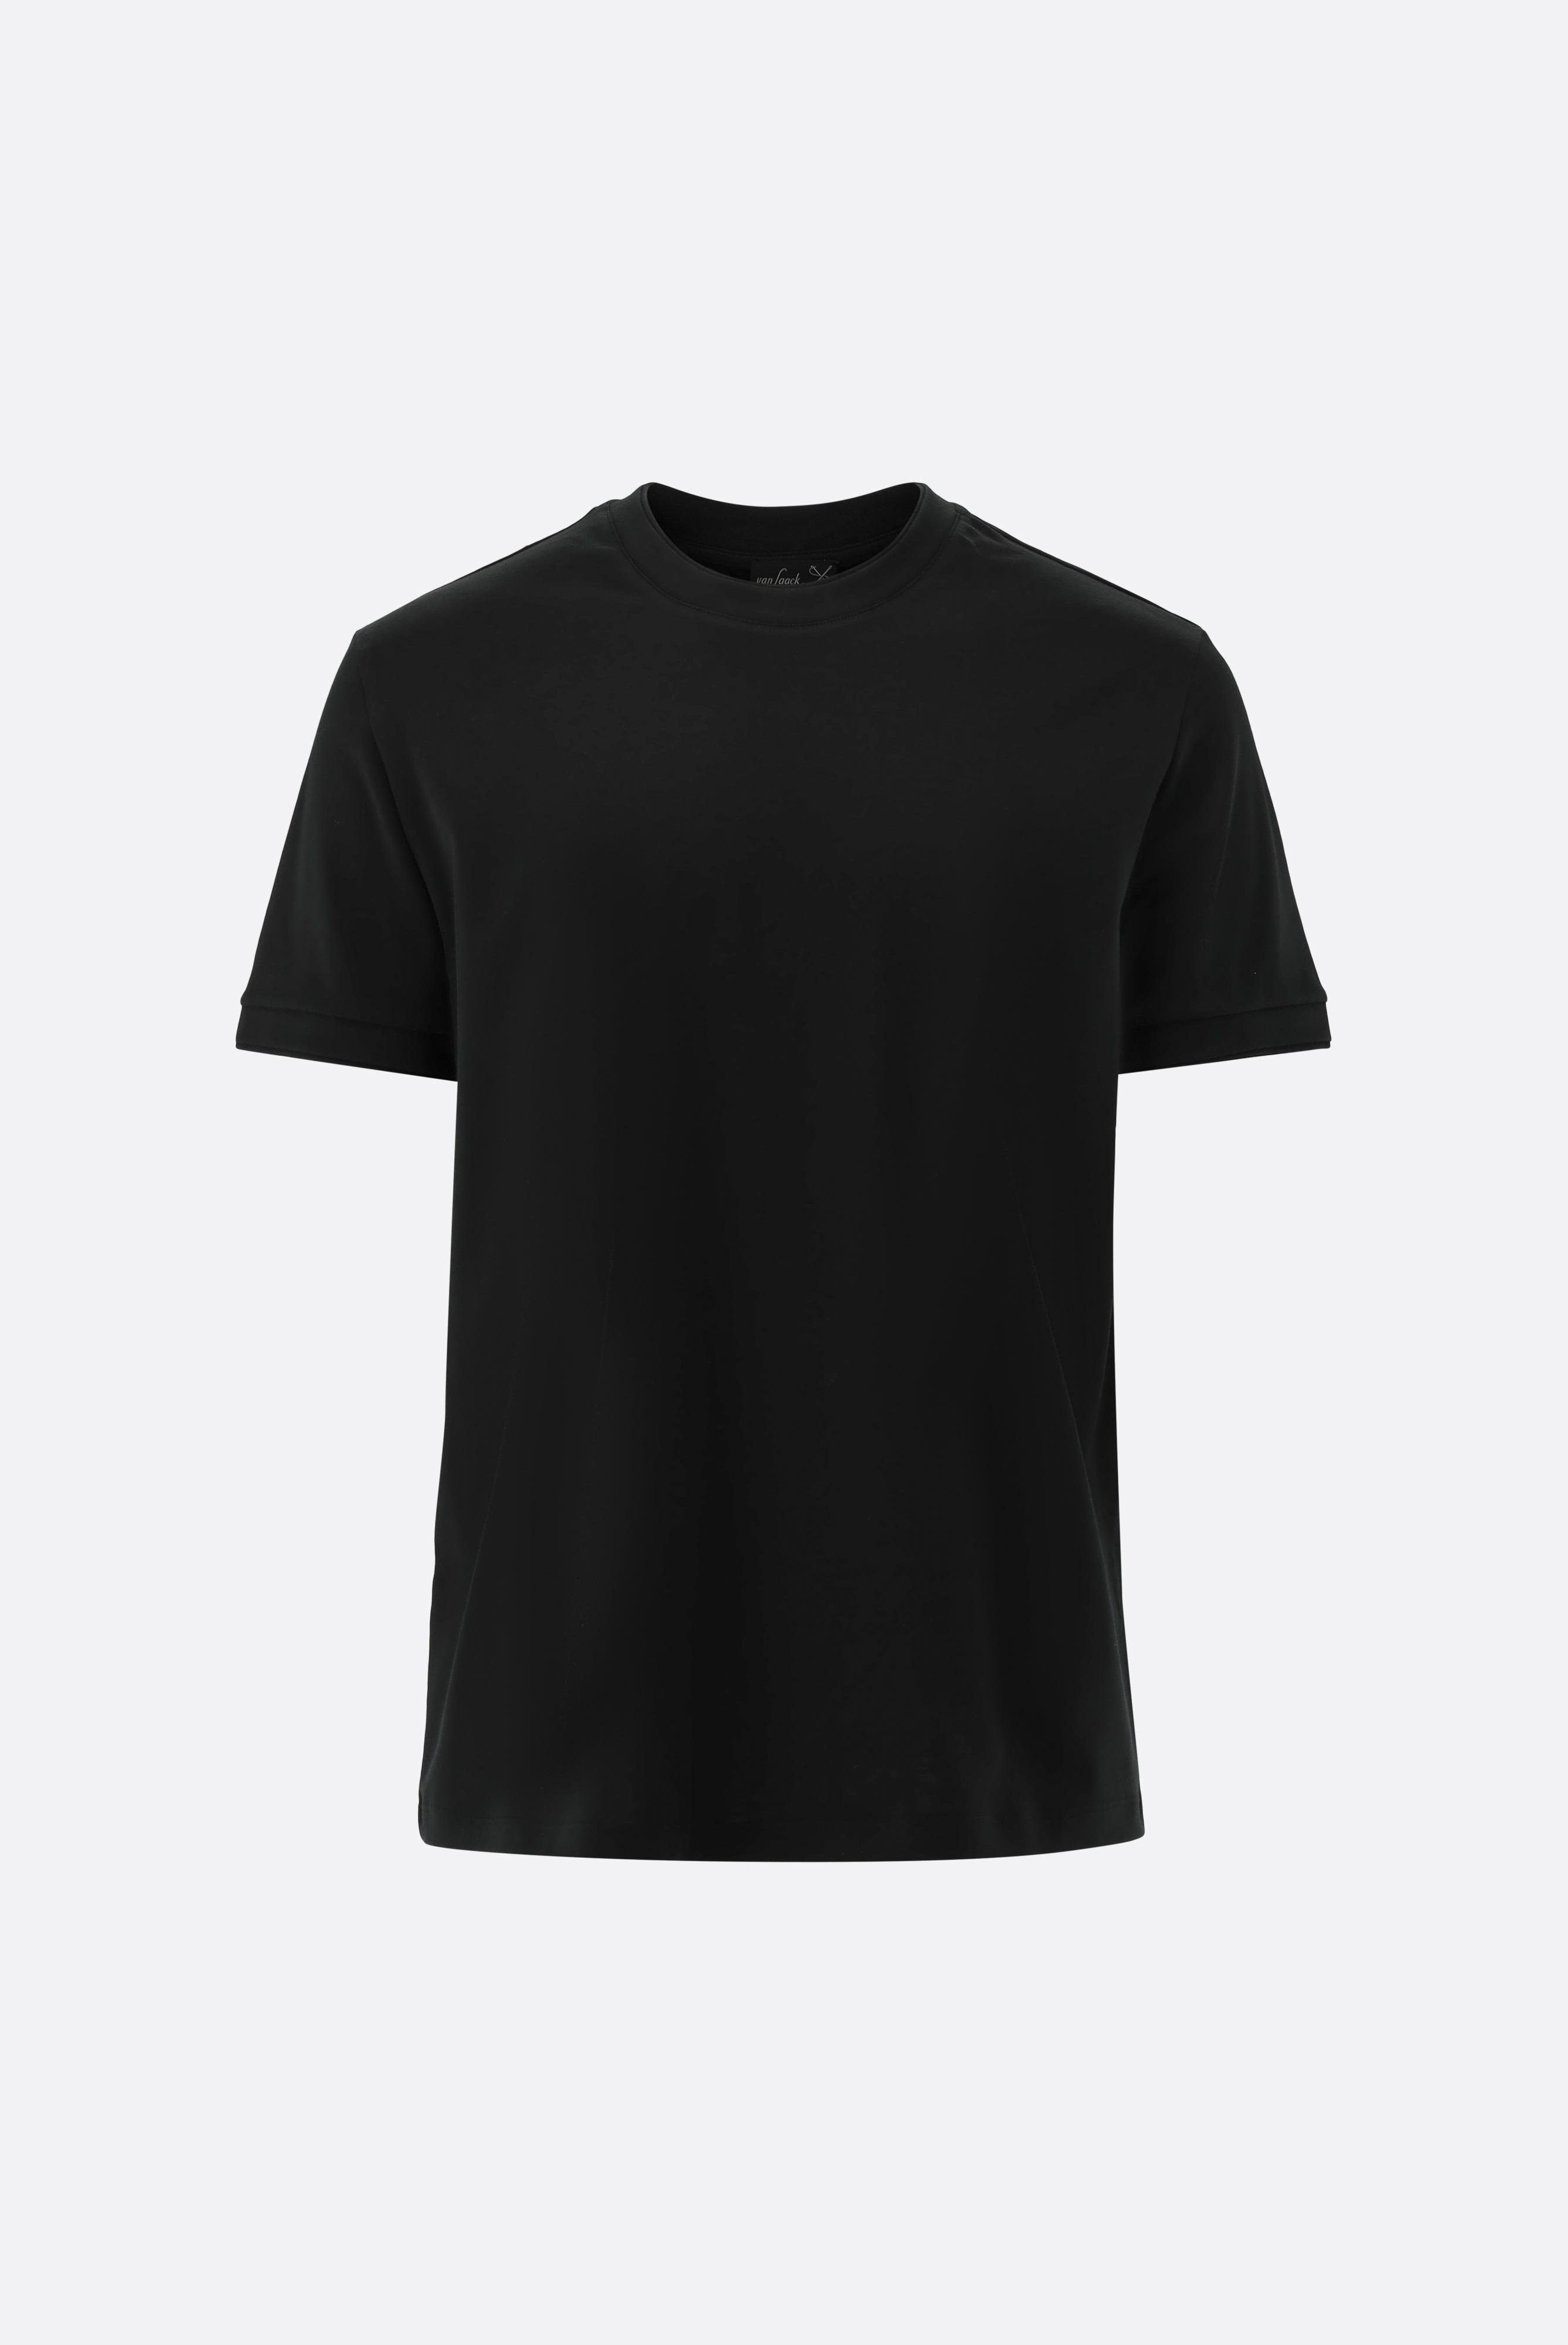 T-Shirts+T-Shirt mit Paspel Details+20.1673.U2.180053.099.XS